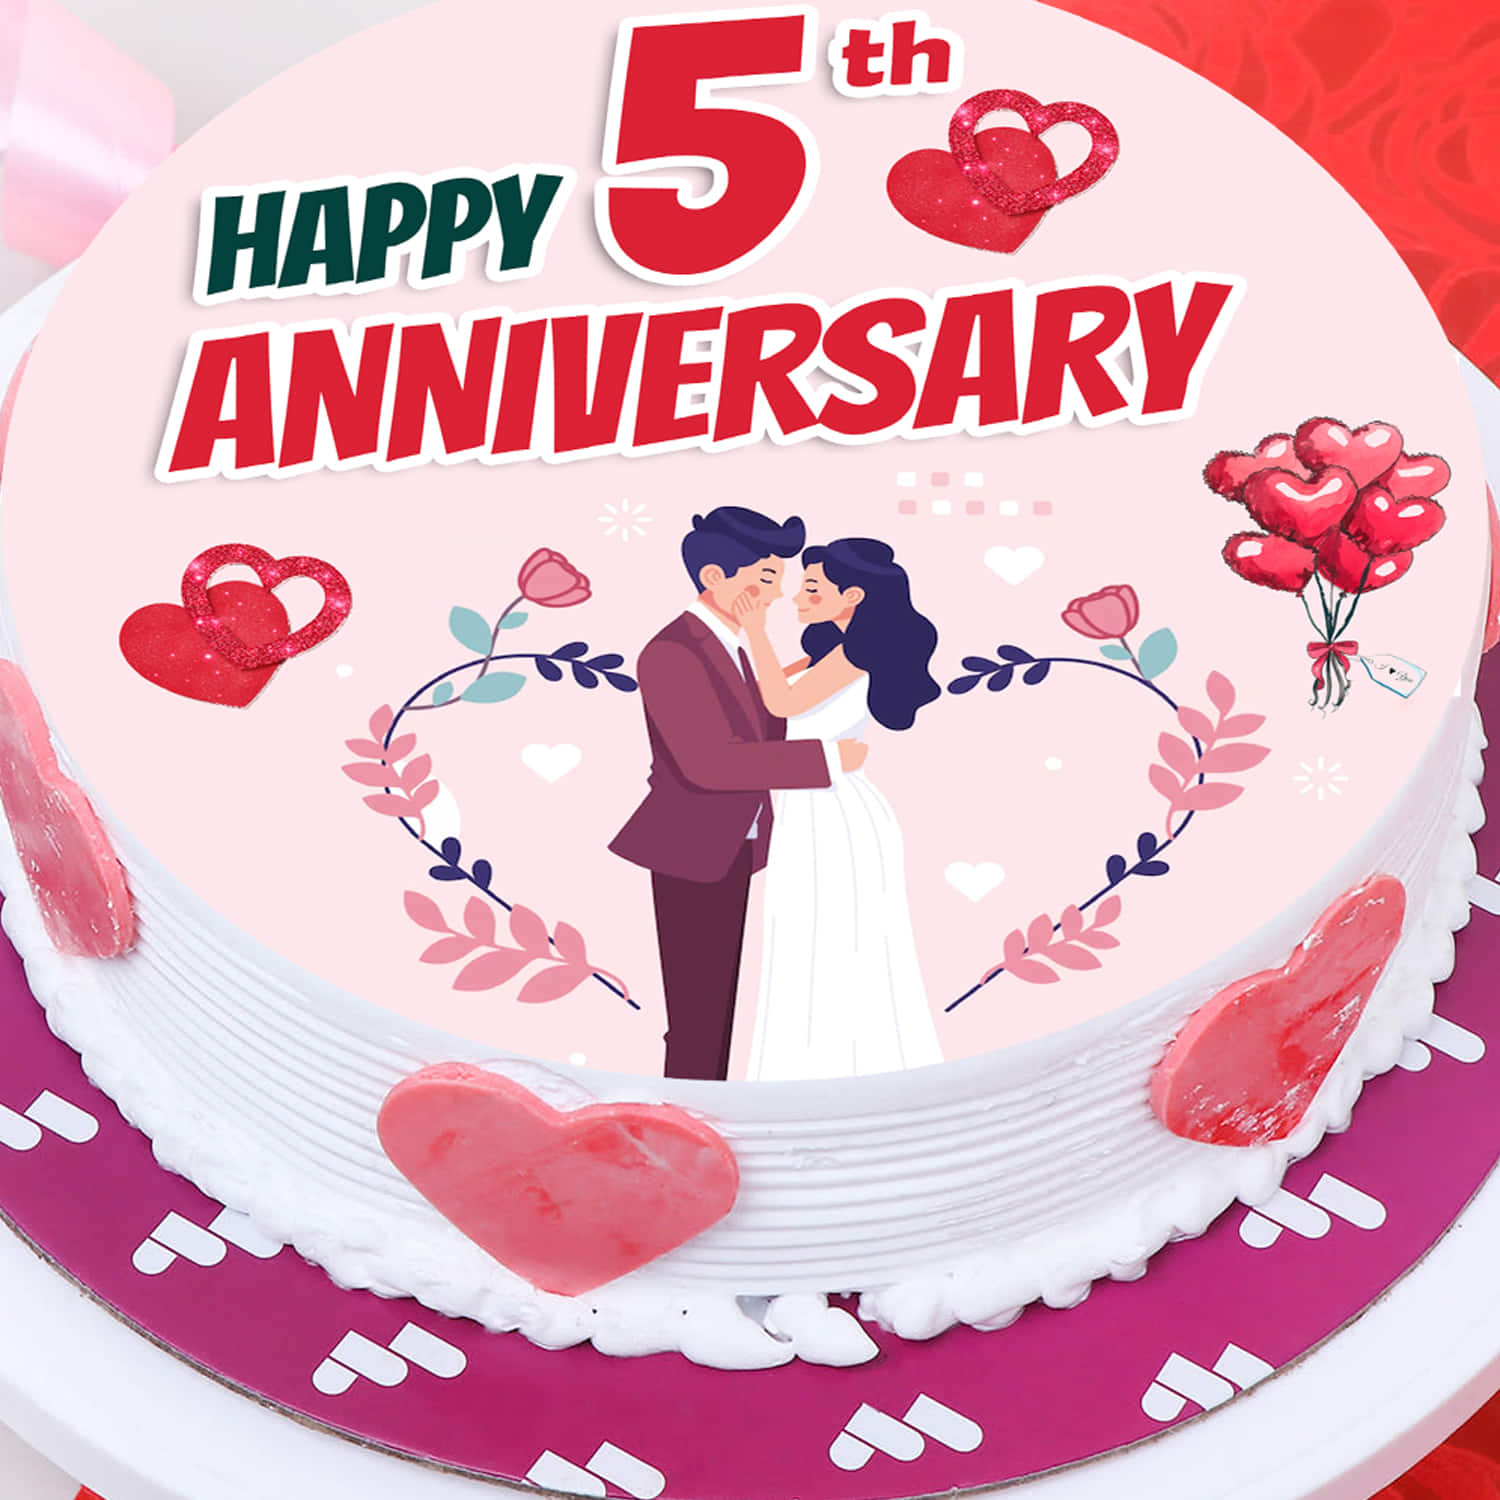 5th Anniversary Fondant Cake | Anniversary Cakes